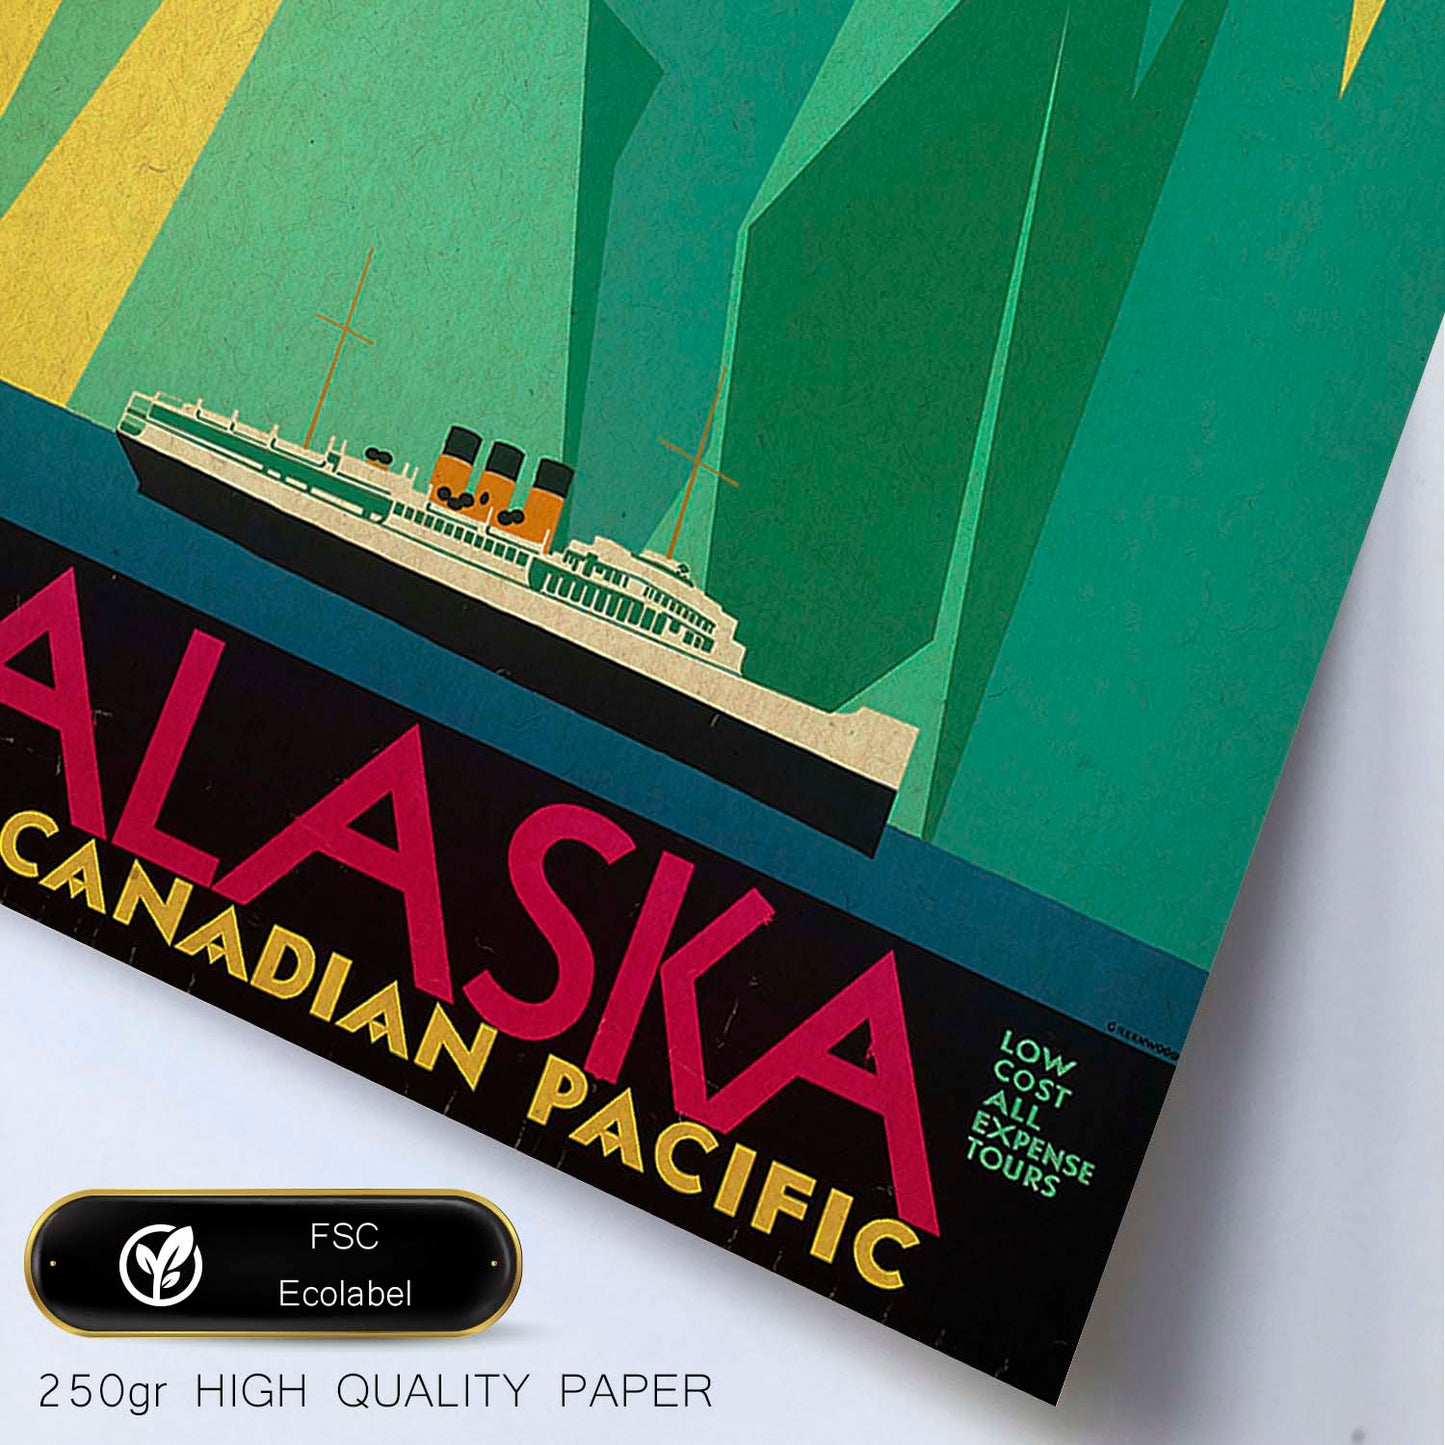 Poster vintage. Cartel vintage. Iceberg en Alaska.-Artwork-Nacnic-Nacnic Estudio SL